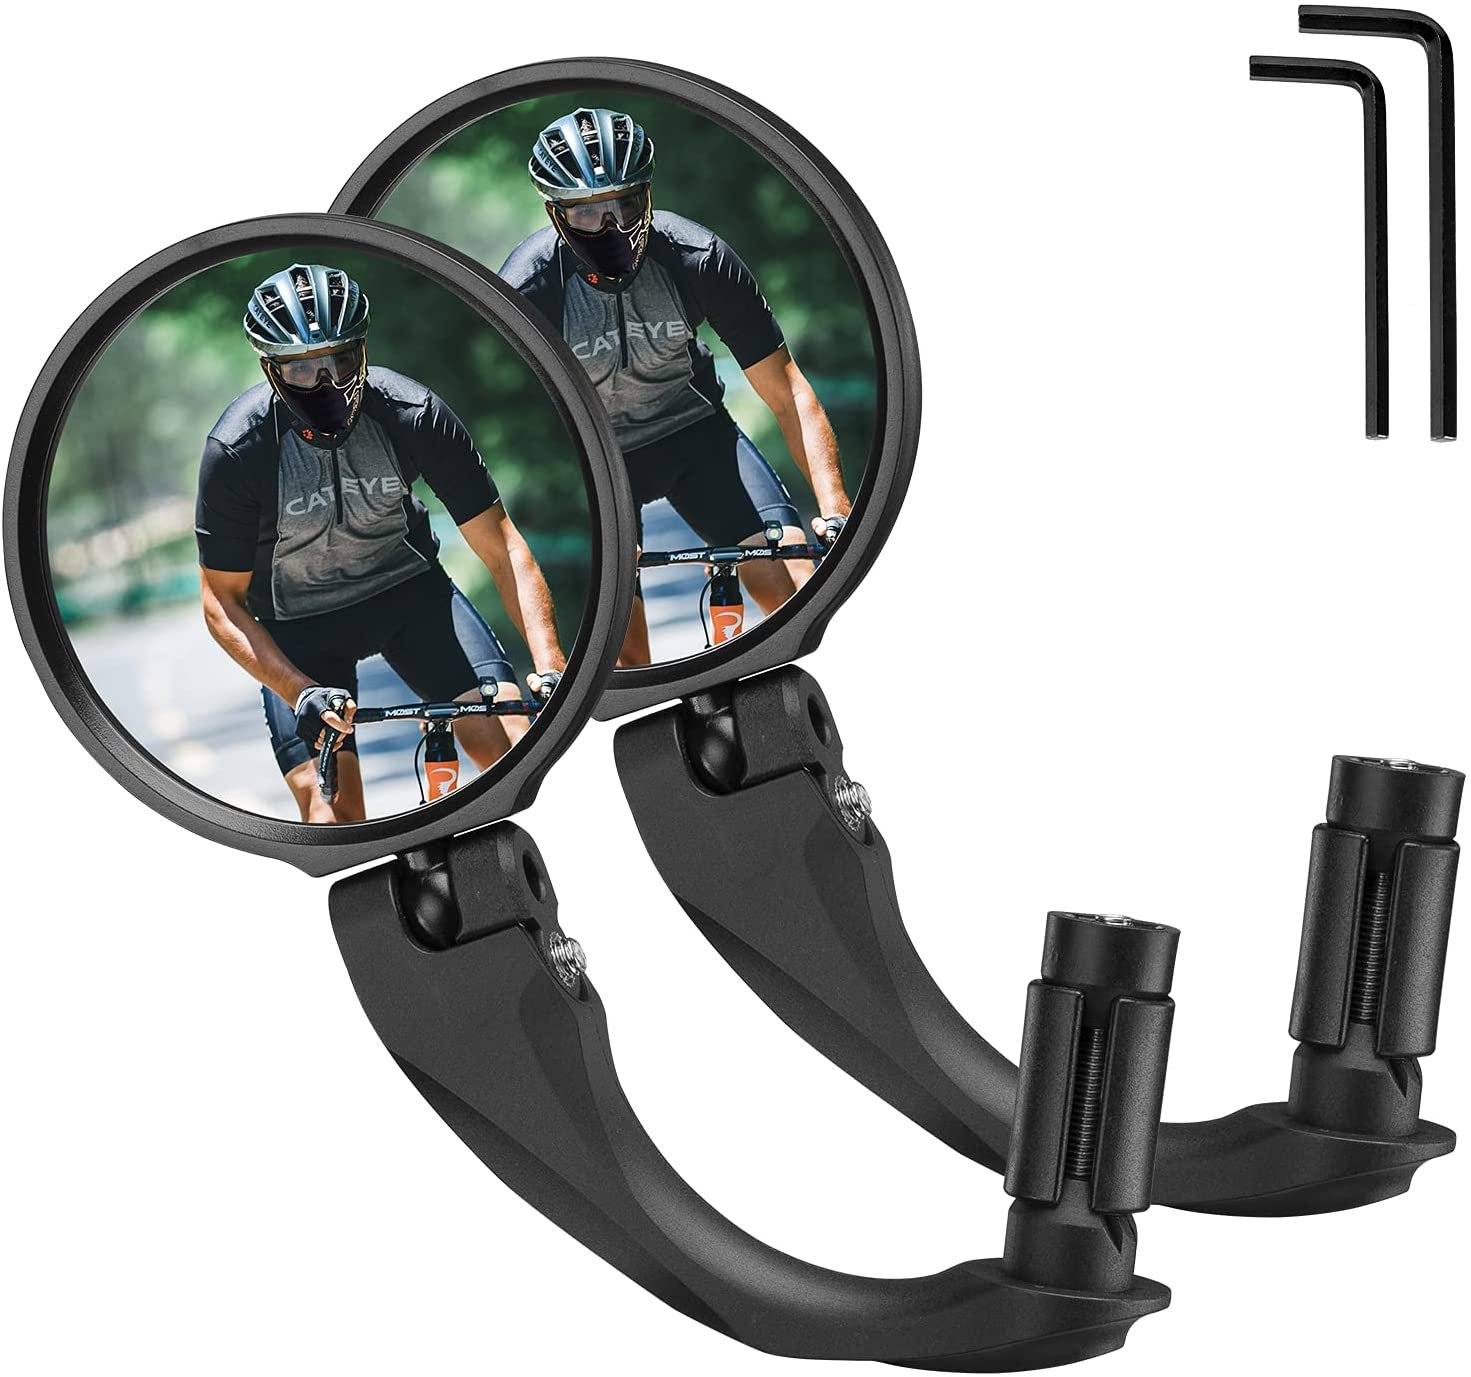 Зеркало велосипедное RockBros, акриловое, заднего вида, круглое 7,5 см, длина ручки 9 см, черный, FK-272 зеркало заднего вида dream bike микс